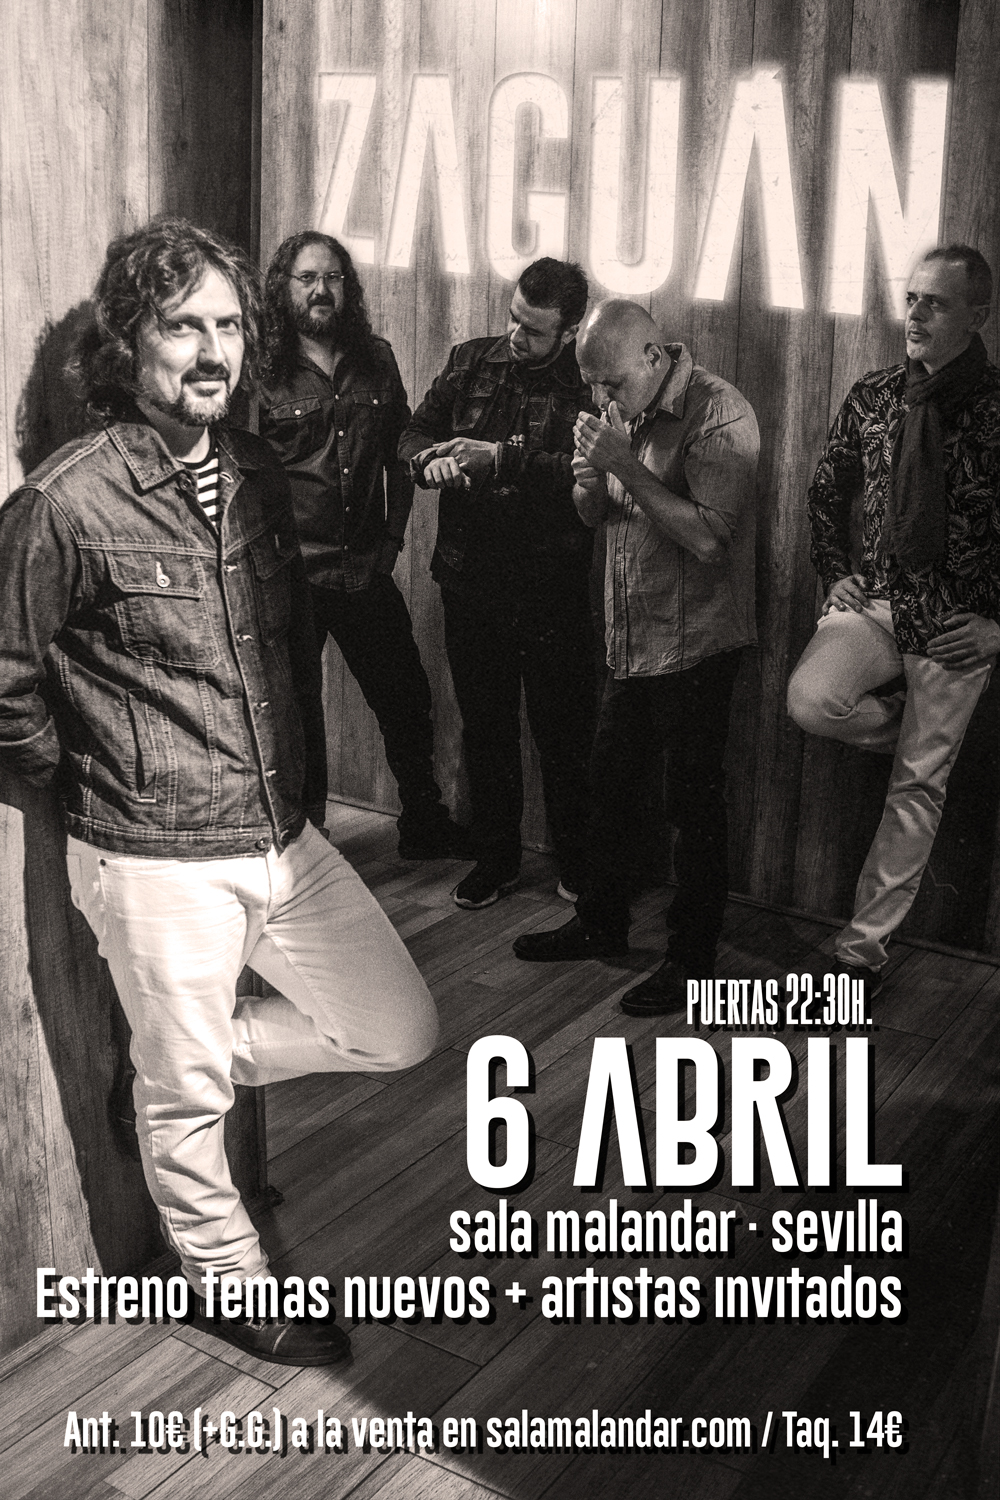 Zaguán presenta su nuevo EP en Sala Malandar de Sevilla